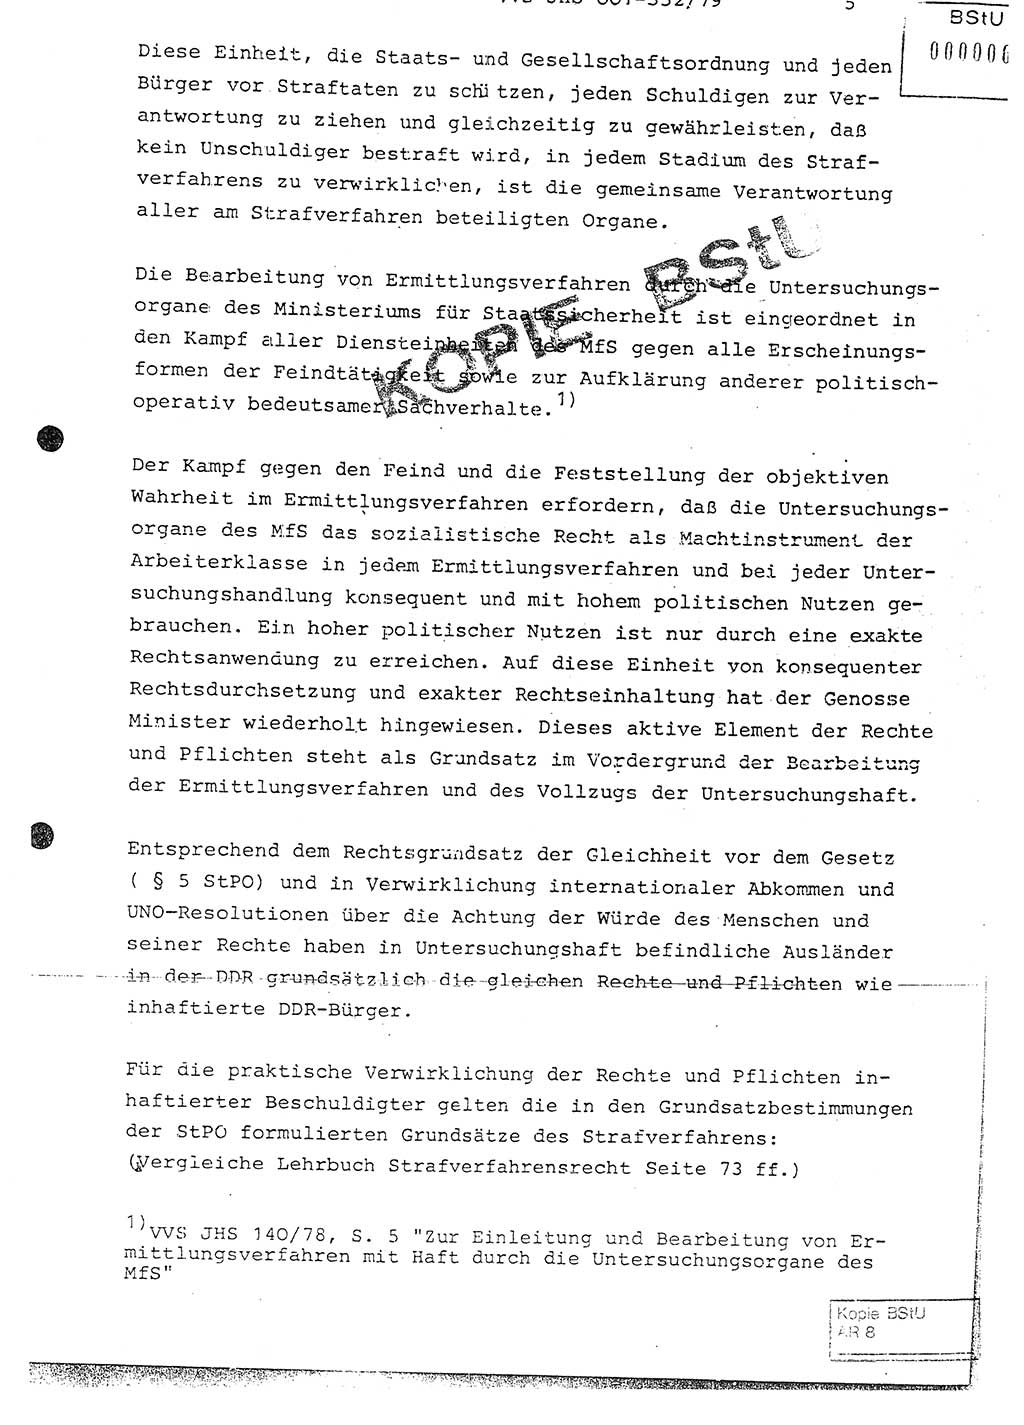 Diplomarbeit Hauptmann Peter Wittum (BV Bln. Abt. HA Ⅸ), Ministerium für Staatssicherheit (MfS) [Deutsche Demokratische Republik (DDR)], Juristische Hochschule (JHS), Vertrauliche Verschlußsache (VVS) o001-352/79, Potsdam 1979, Seite 5 (Dipl.-Arb. MfS DDR JHS VVS o001-352/79 1979, S. 5)